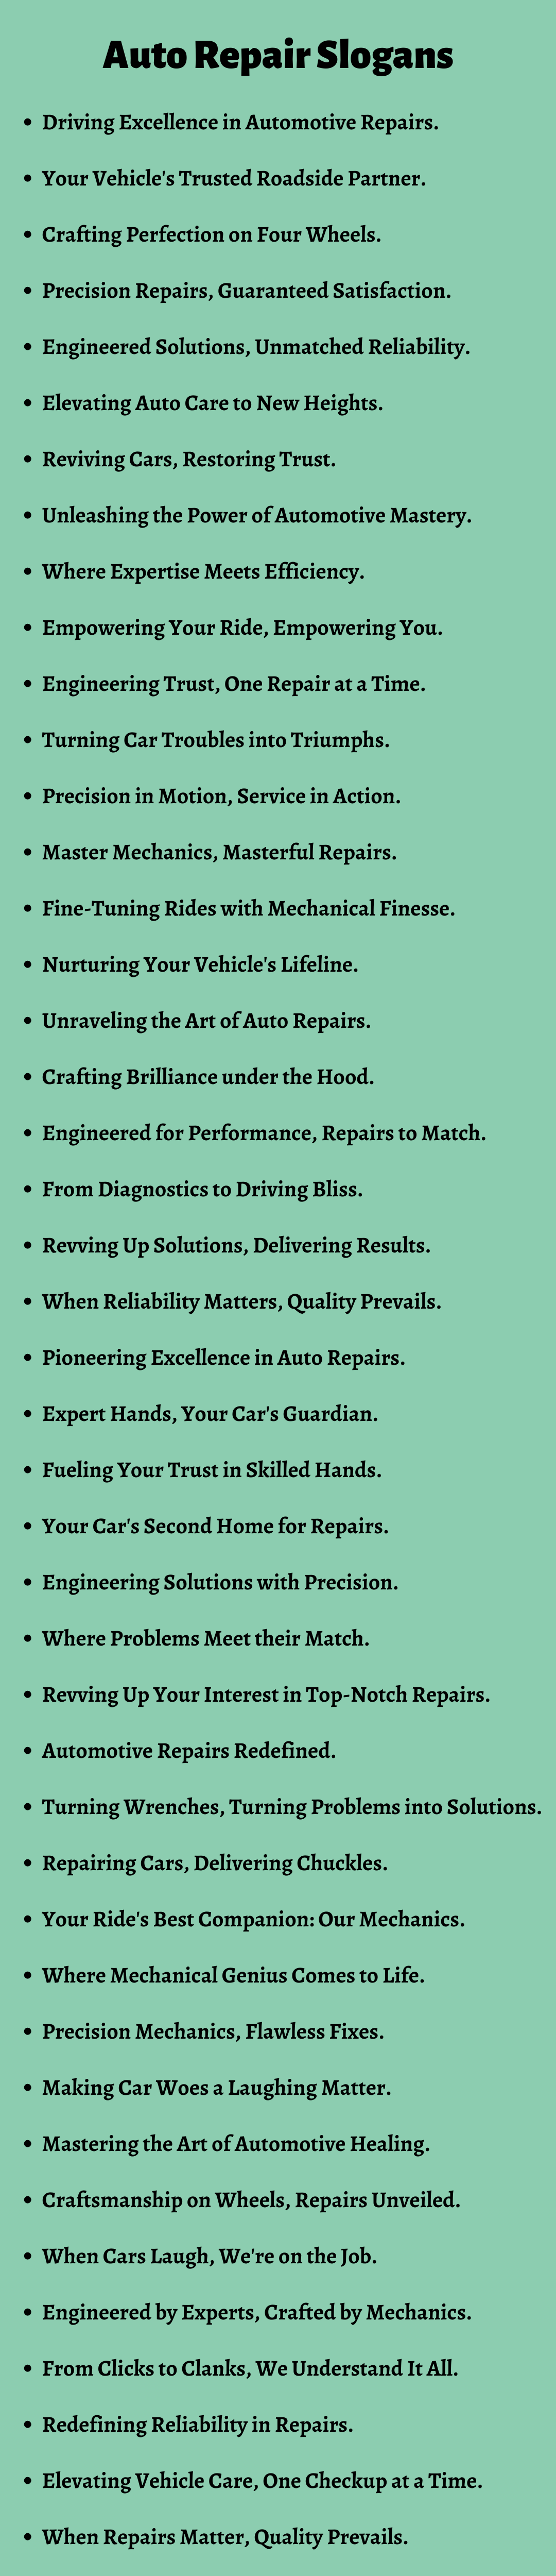 Auto Repair Slogans